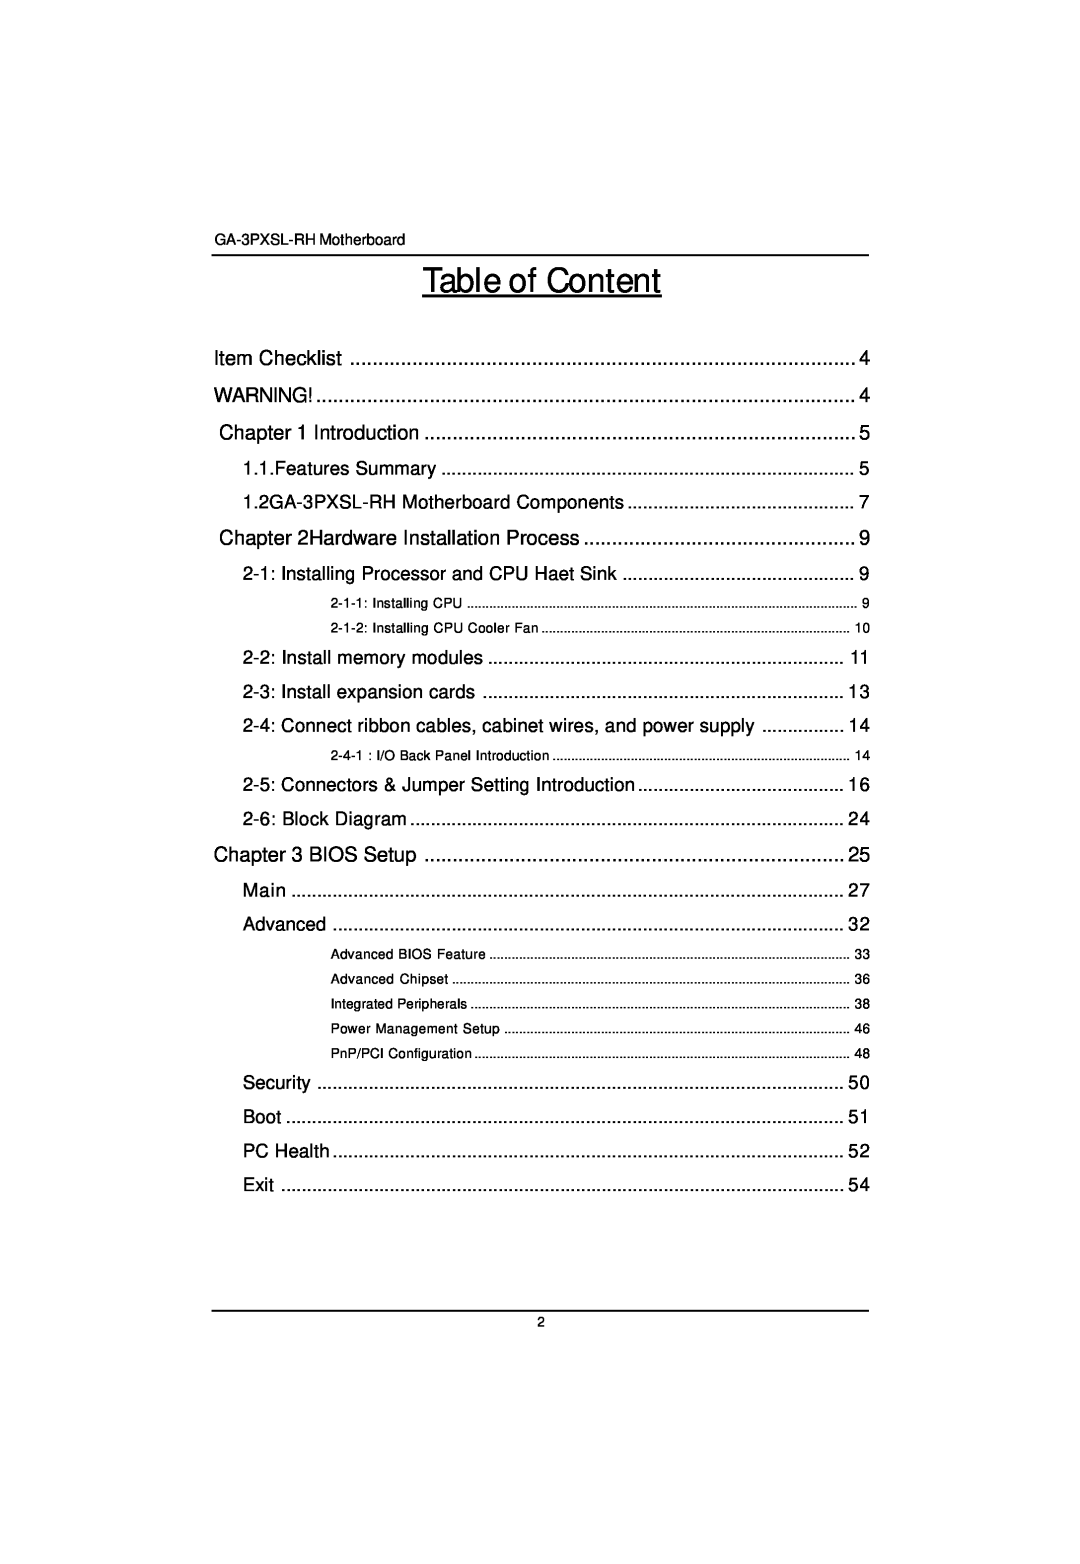 Gigabyte GA-3PXSL-RH user manual Table of Content 